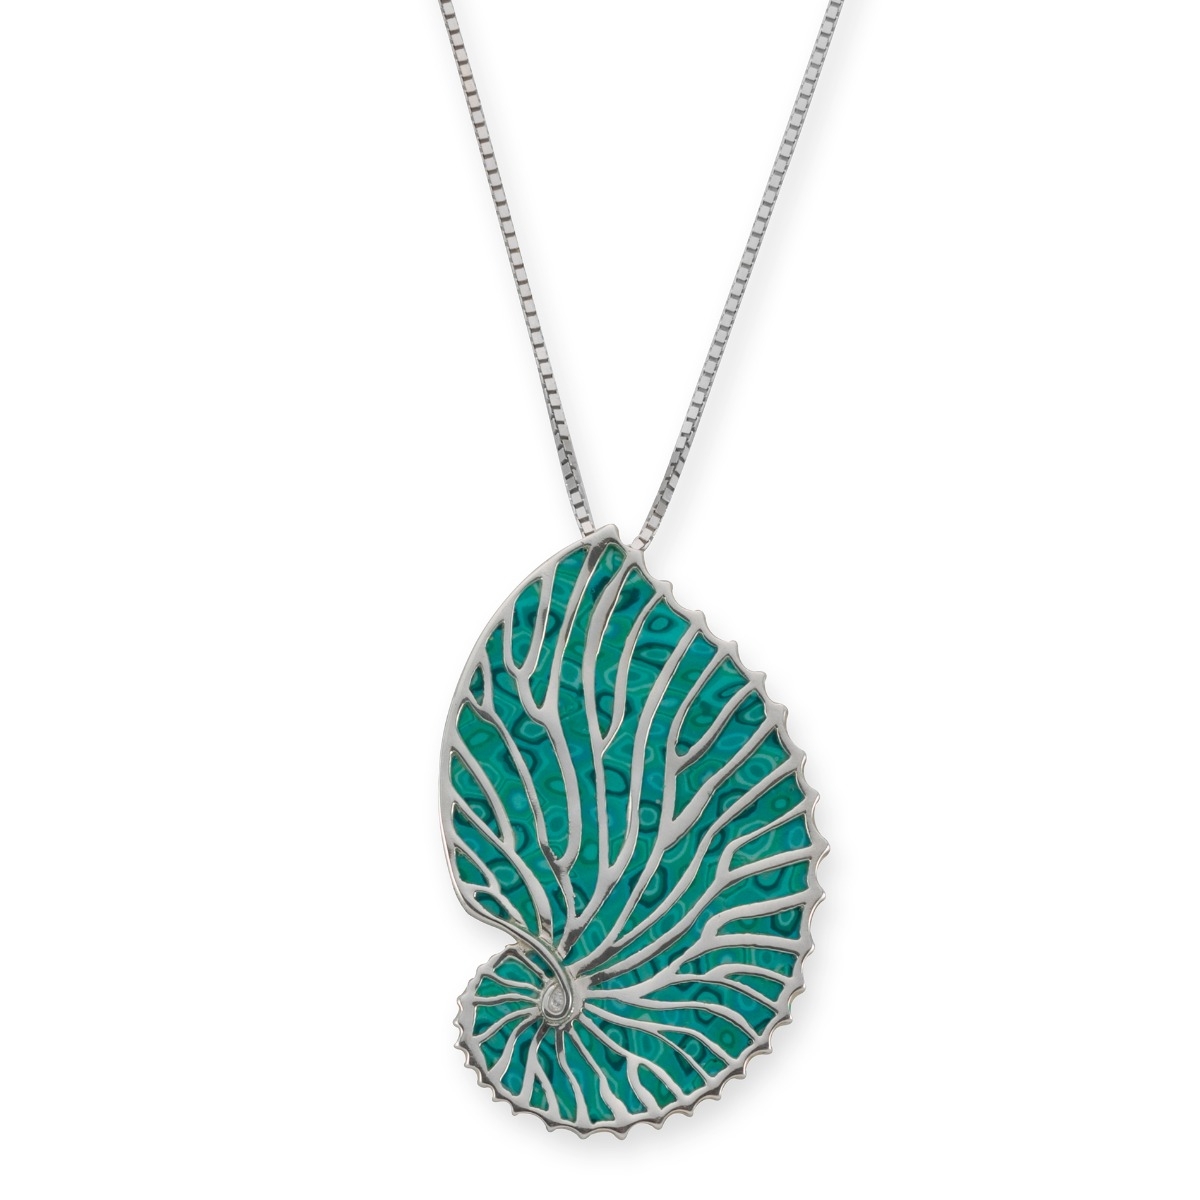 Adina Plastelina Silver Nautilus Shell Necklace - Turquoise - 1